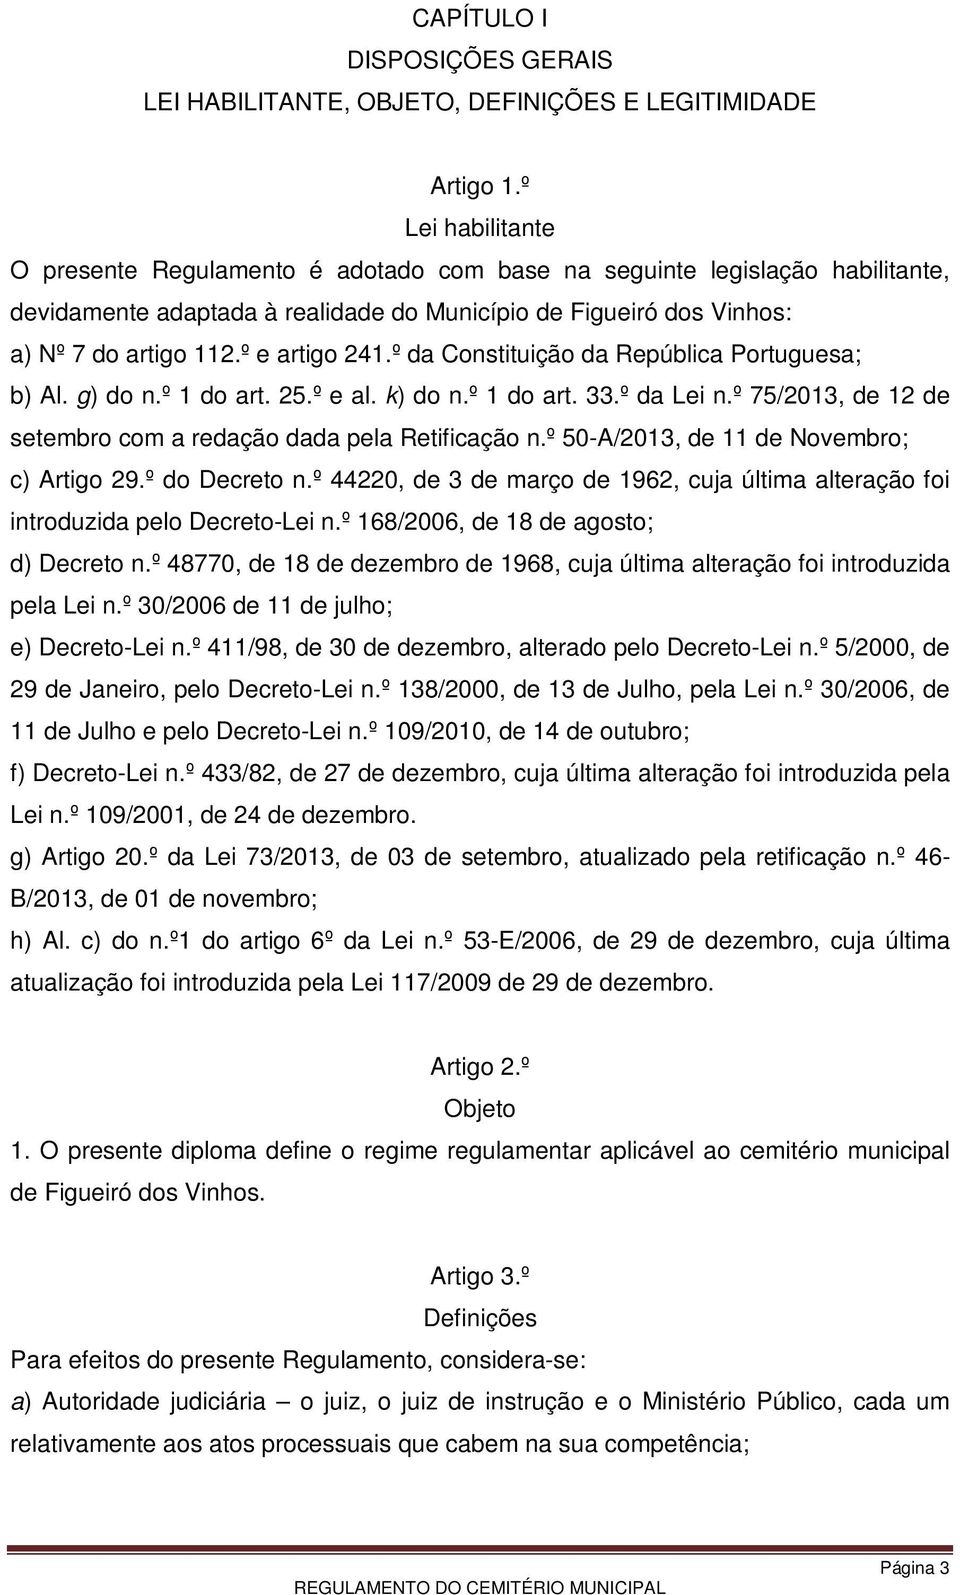 º e artigo 241.º da Constituição da República Portuguesa; b) Al. g) do n.º 1 do art. 25.º e al. k) do n.º 1 do art. 33.º da Lei n.º 75/2013, de 12 de setembro com a redação dada pela Retificação n.